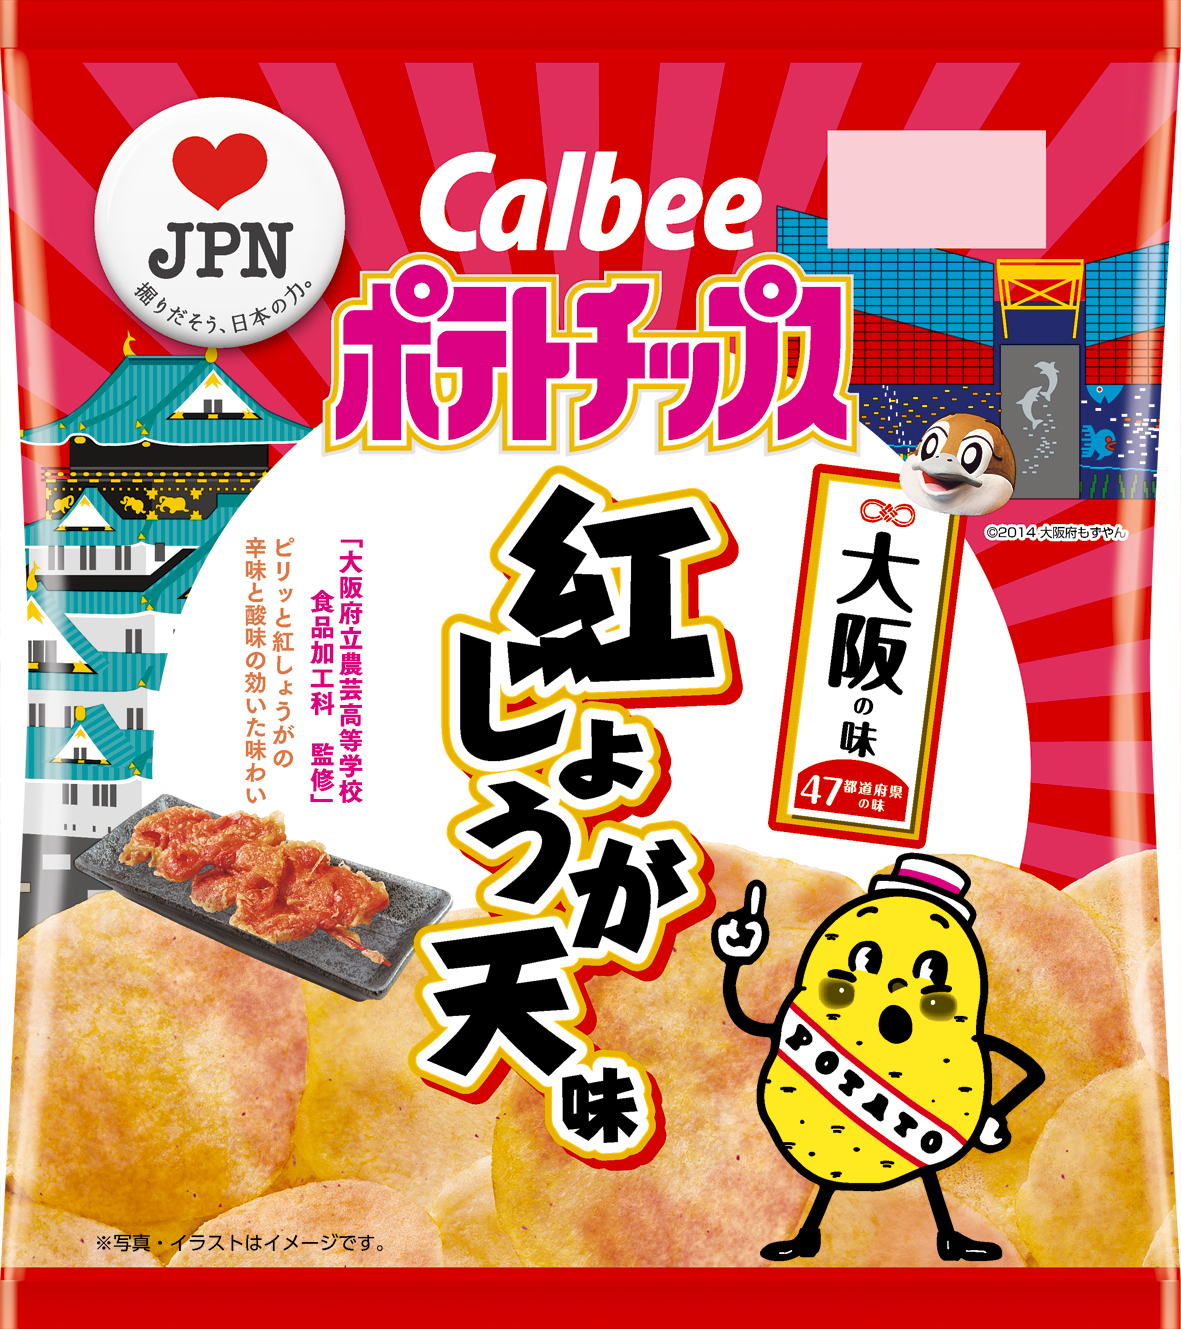 47都道府県の 地元ならではの味 をポテトチップスで再現 大阪の味 ポテトチップス 紅しょうが天味 1月21日 月 発売 カルビー株式会社のプレスリリース